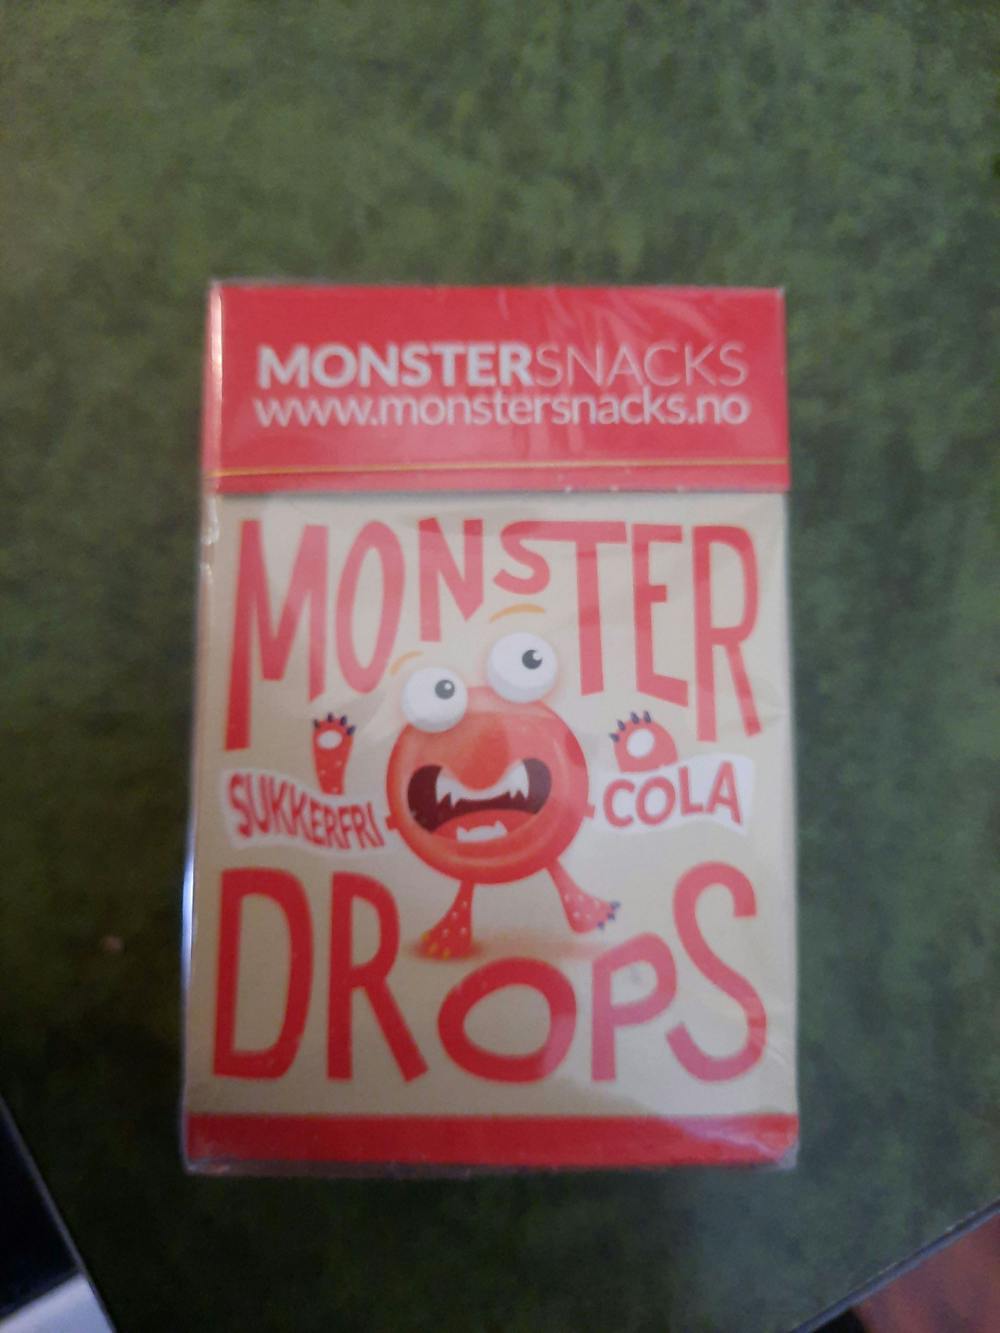 Monster sukkerfri coladrops, Monstersnacks